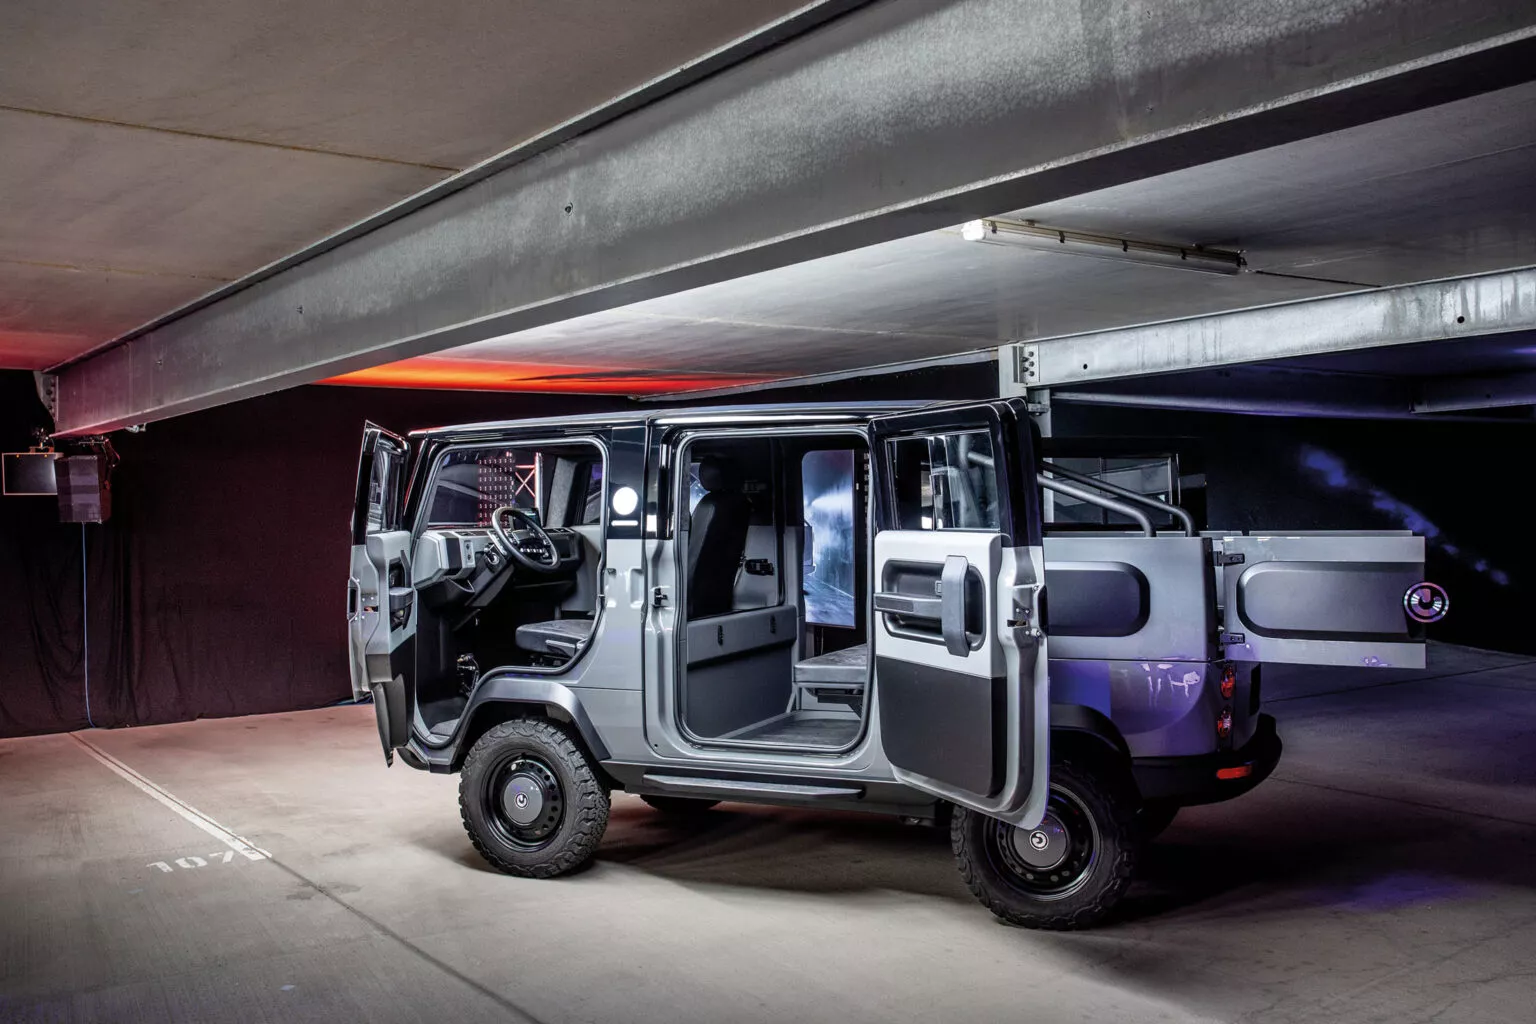 xbus ev, el vehículo modular que puede ser una furgoneta, un pick-up o un minibus, ya tiene fecha